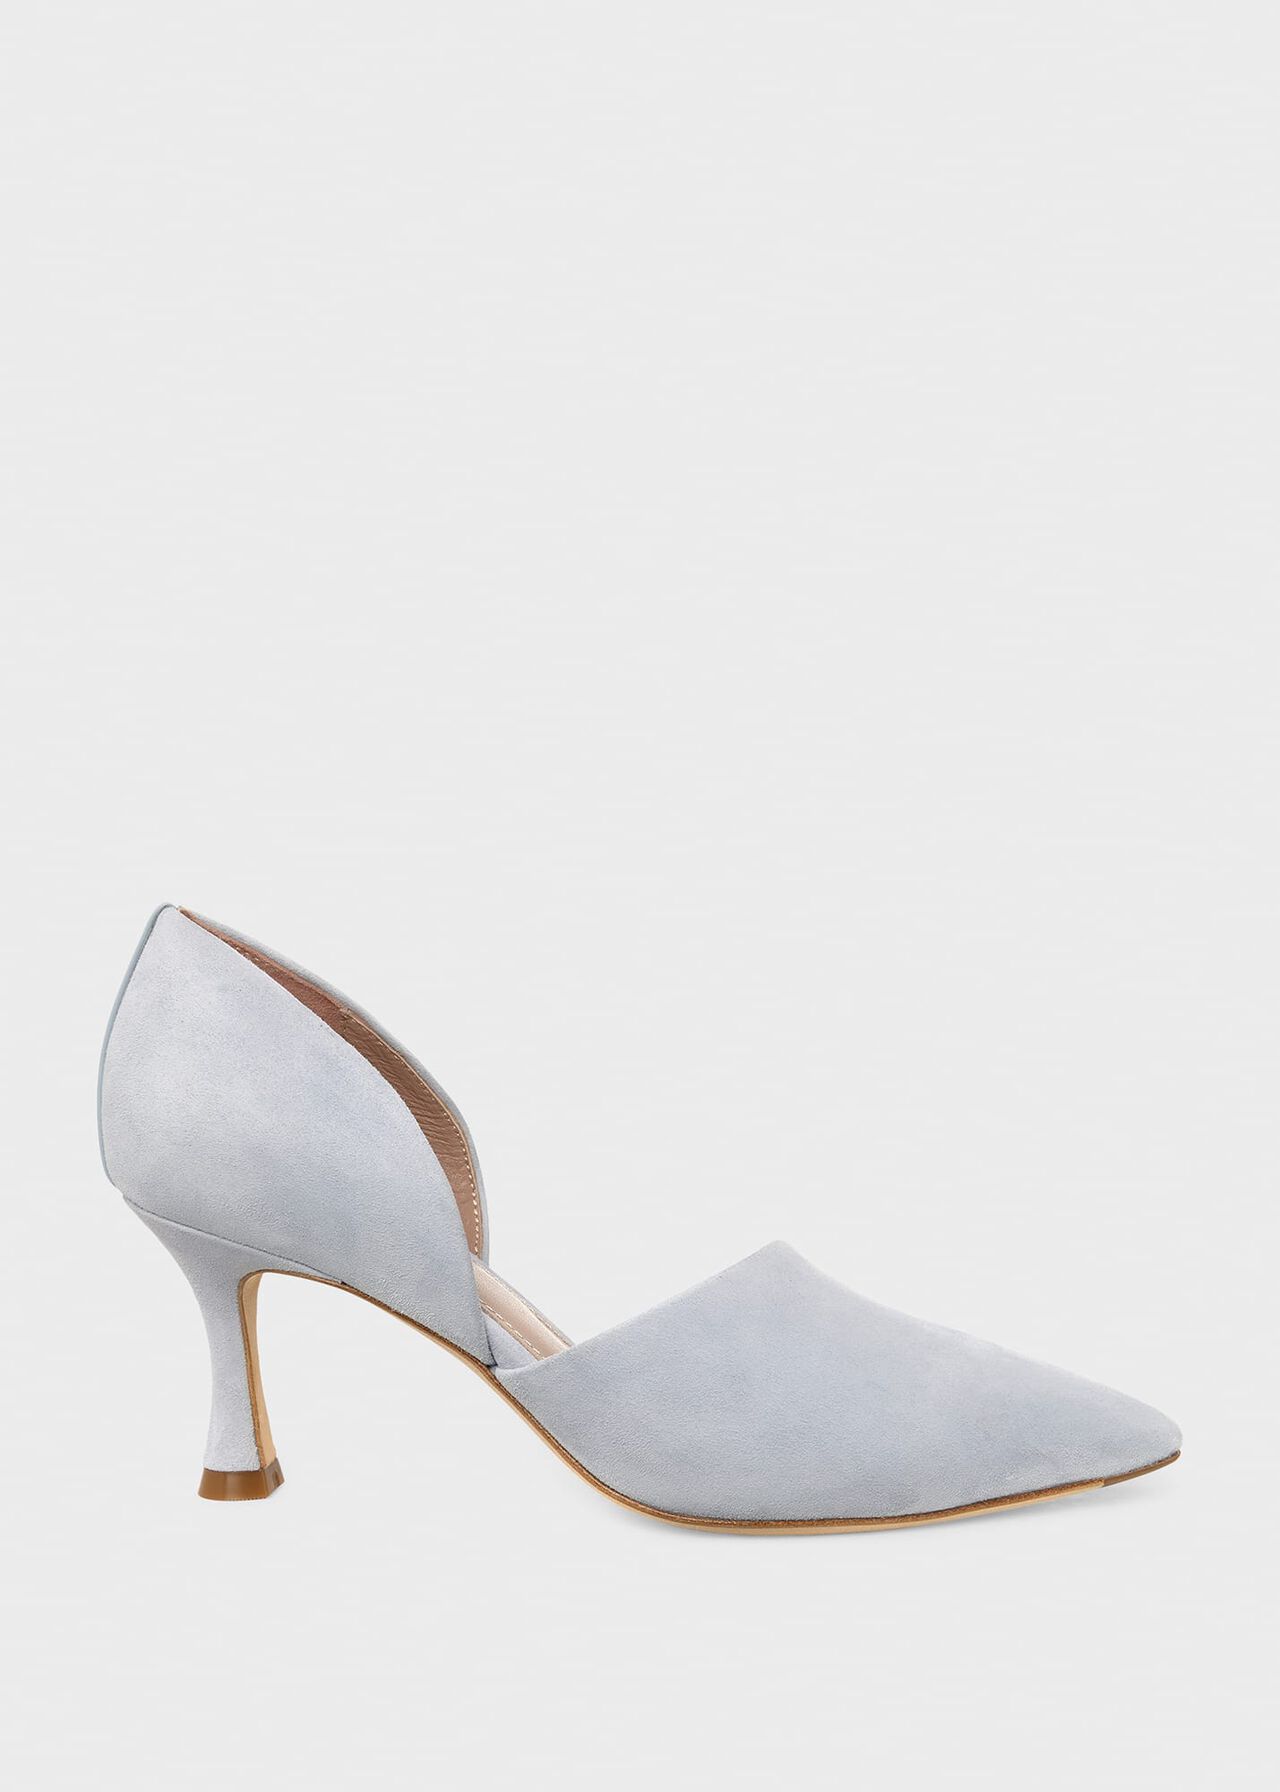 Maya Suede Stiletto D'Orsay Court Shoes, Celeste Blue, hi-res